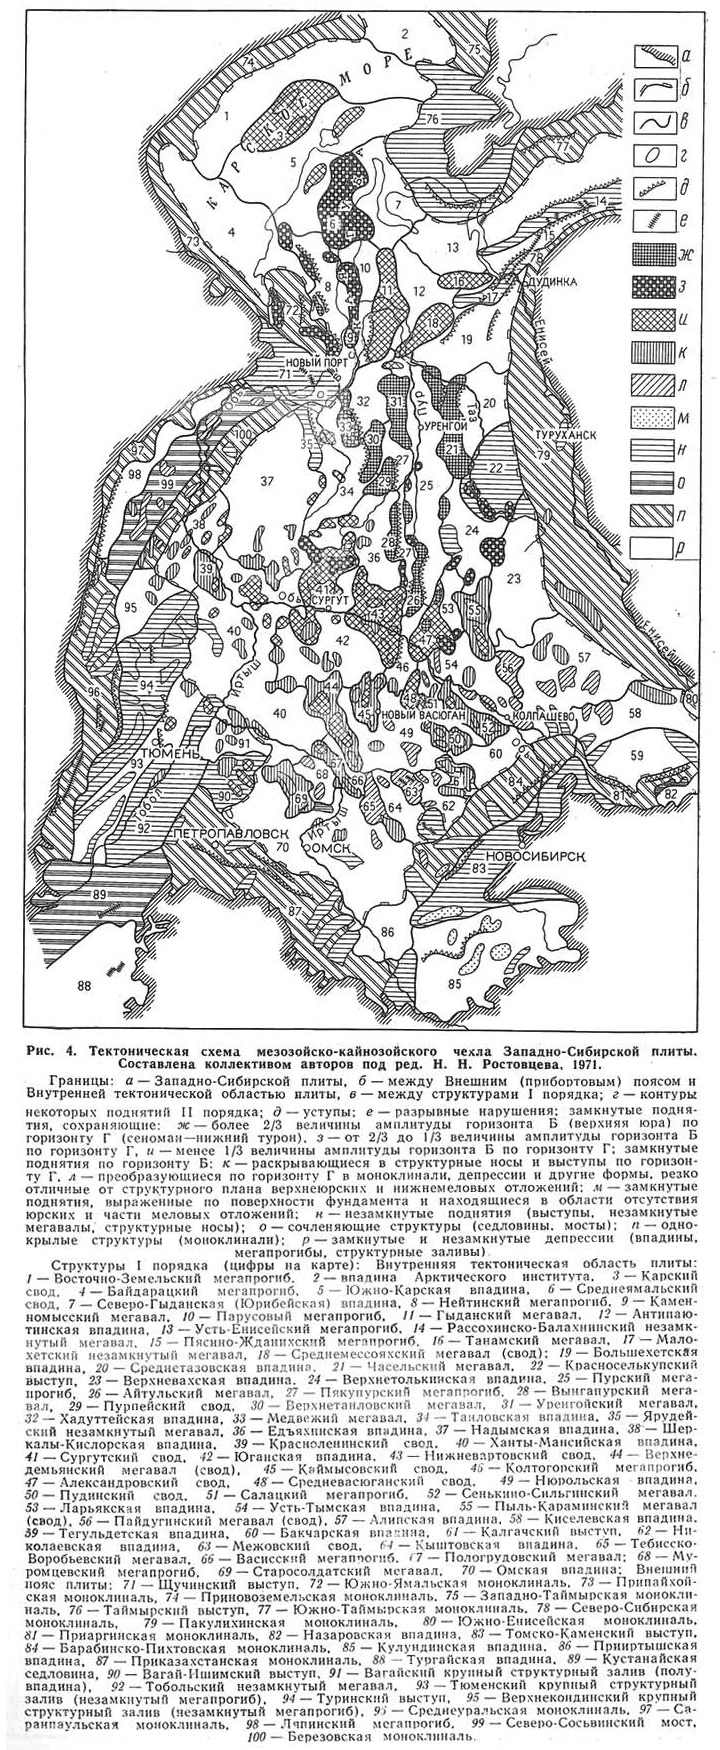 Рис. 4. Тектоническая схема мезозойско-кайнозойского чехла Западно-Сибирской плиты